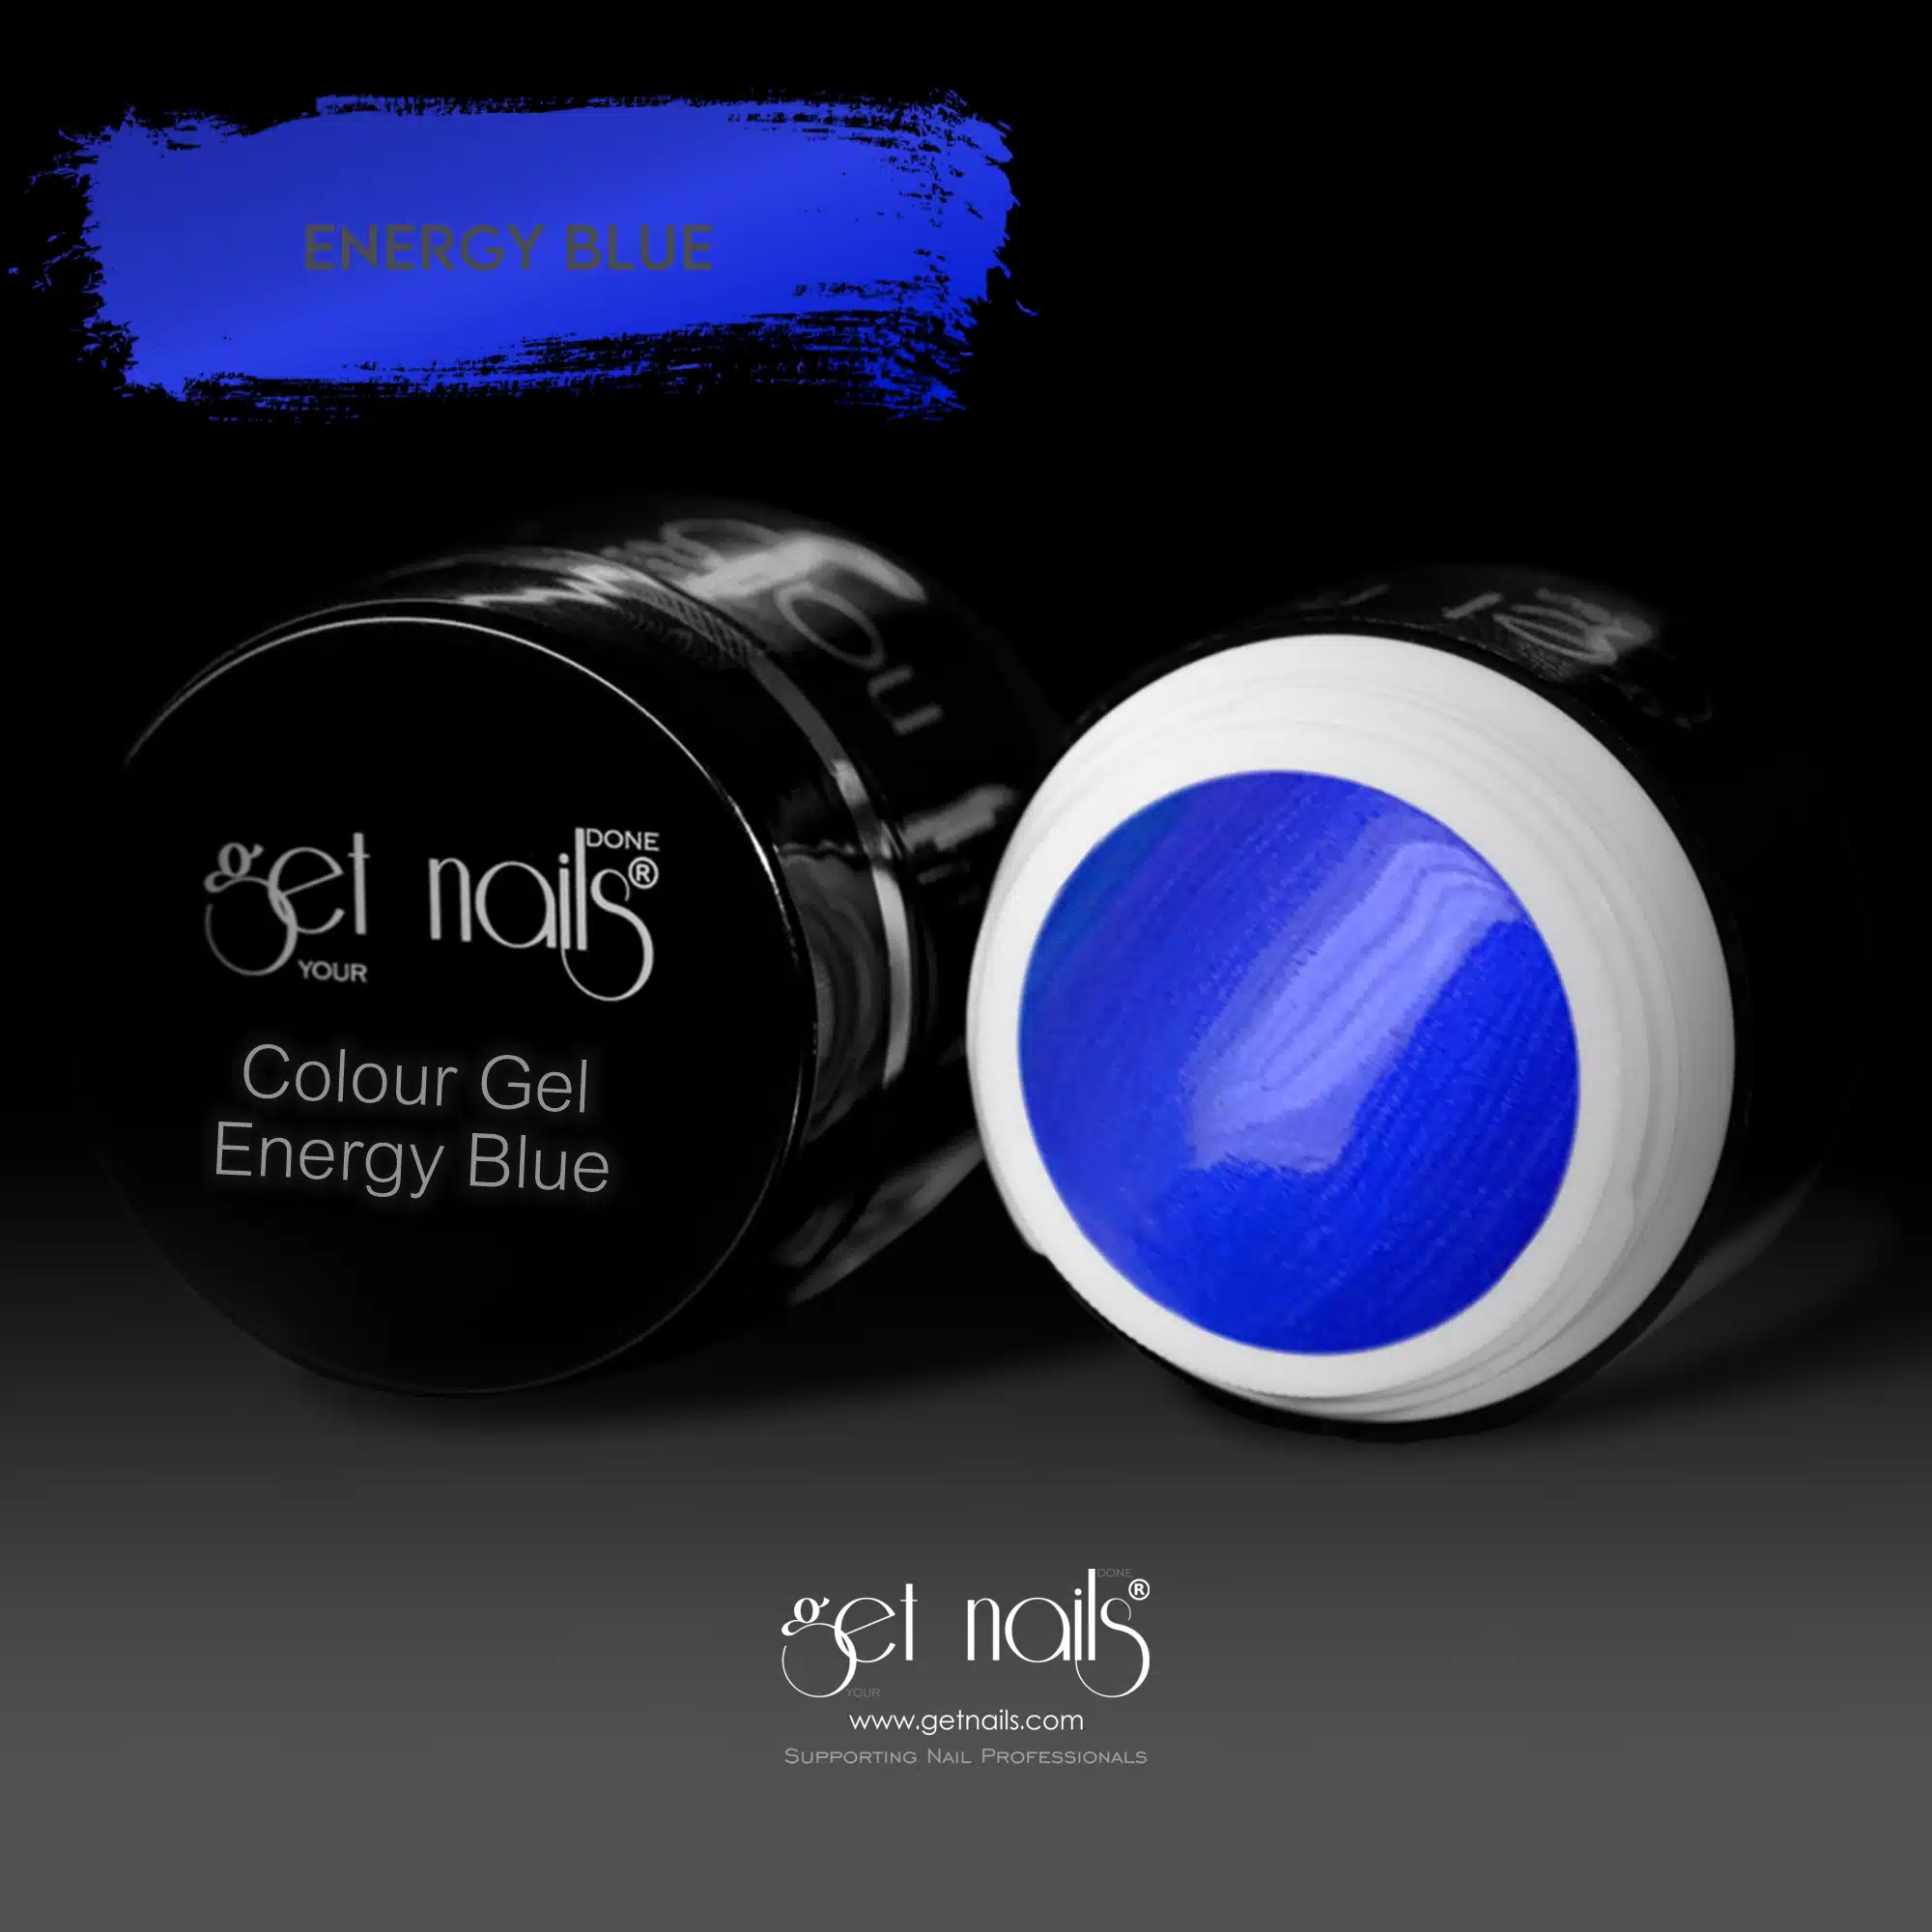 Get Nails Austria - Gel colorato Energy Blue 5g